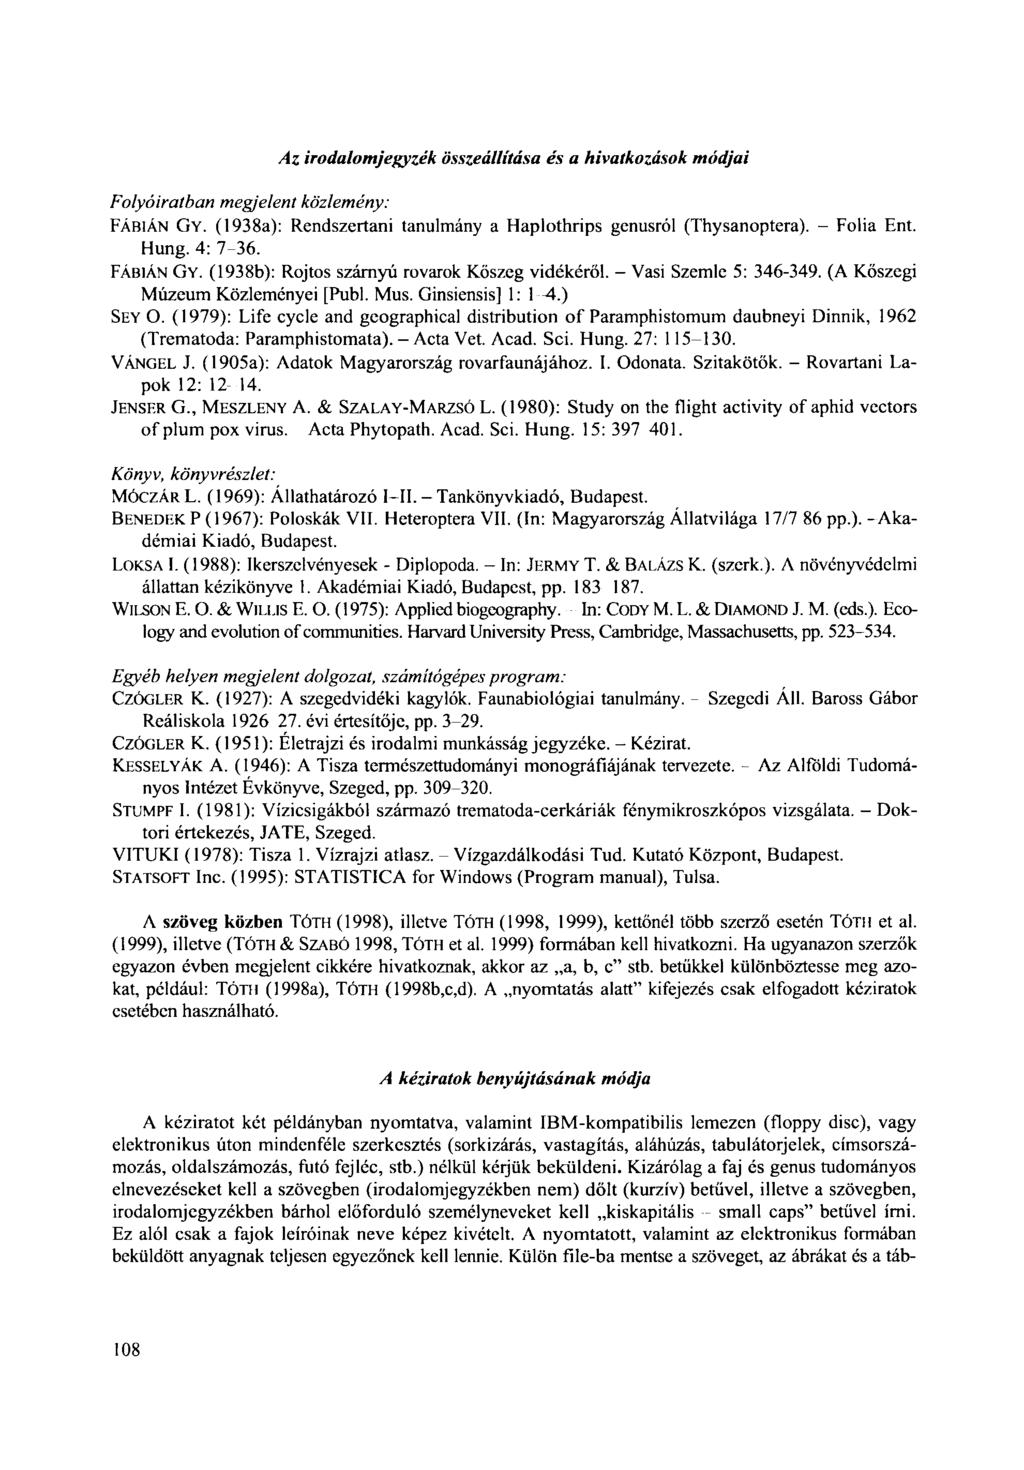 Folyóiratban megjelent közlemény: Az irodalomjegyzék összeállítása és a hivatkozások módjai FÁBIÁN GY. (1938a): Rendszertani tanulmány A Haplothrips genusról (Thysanoptera). - Folia Ent. Hung.